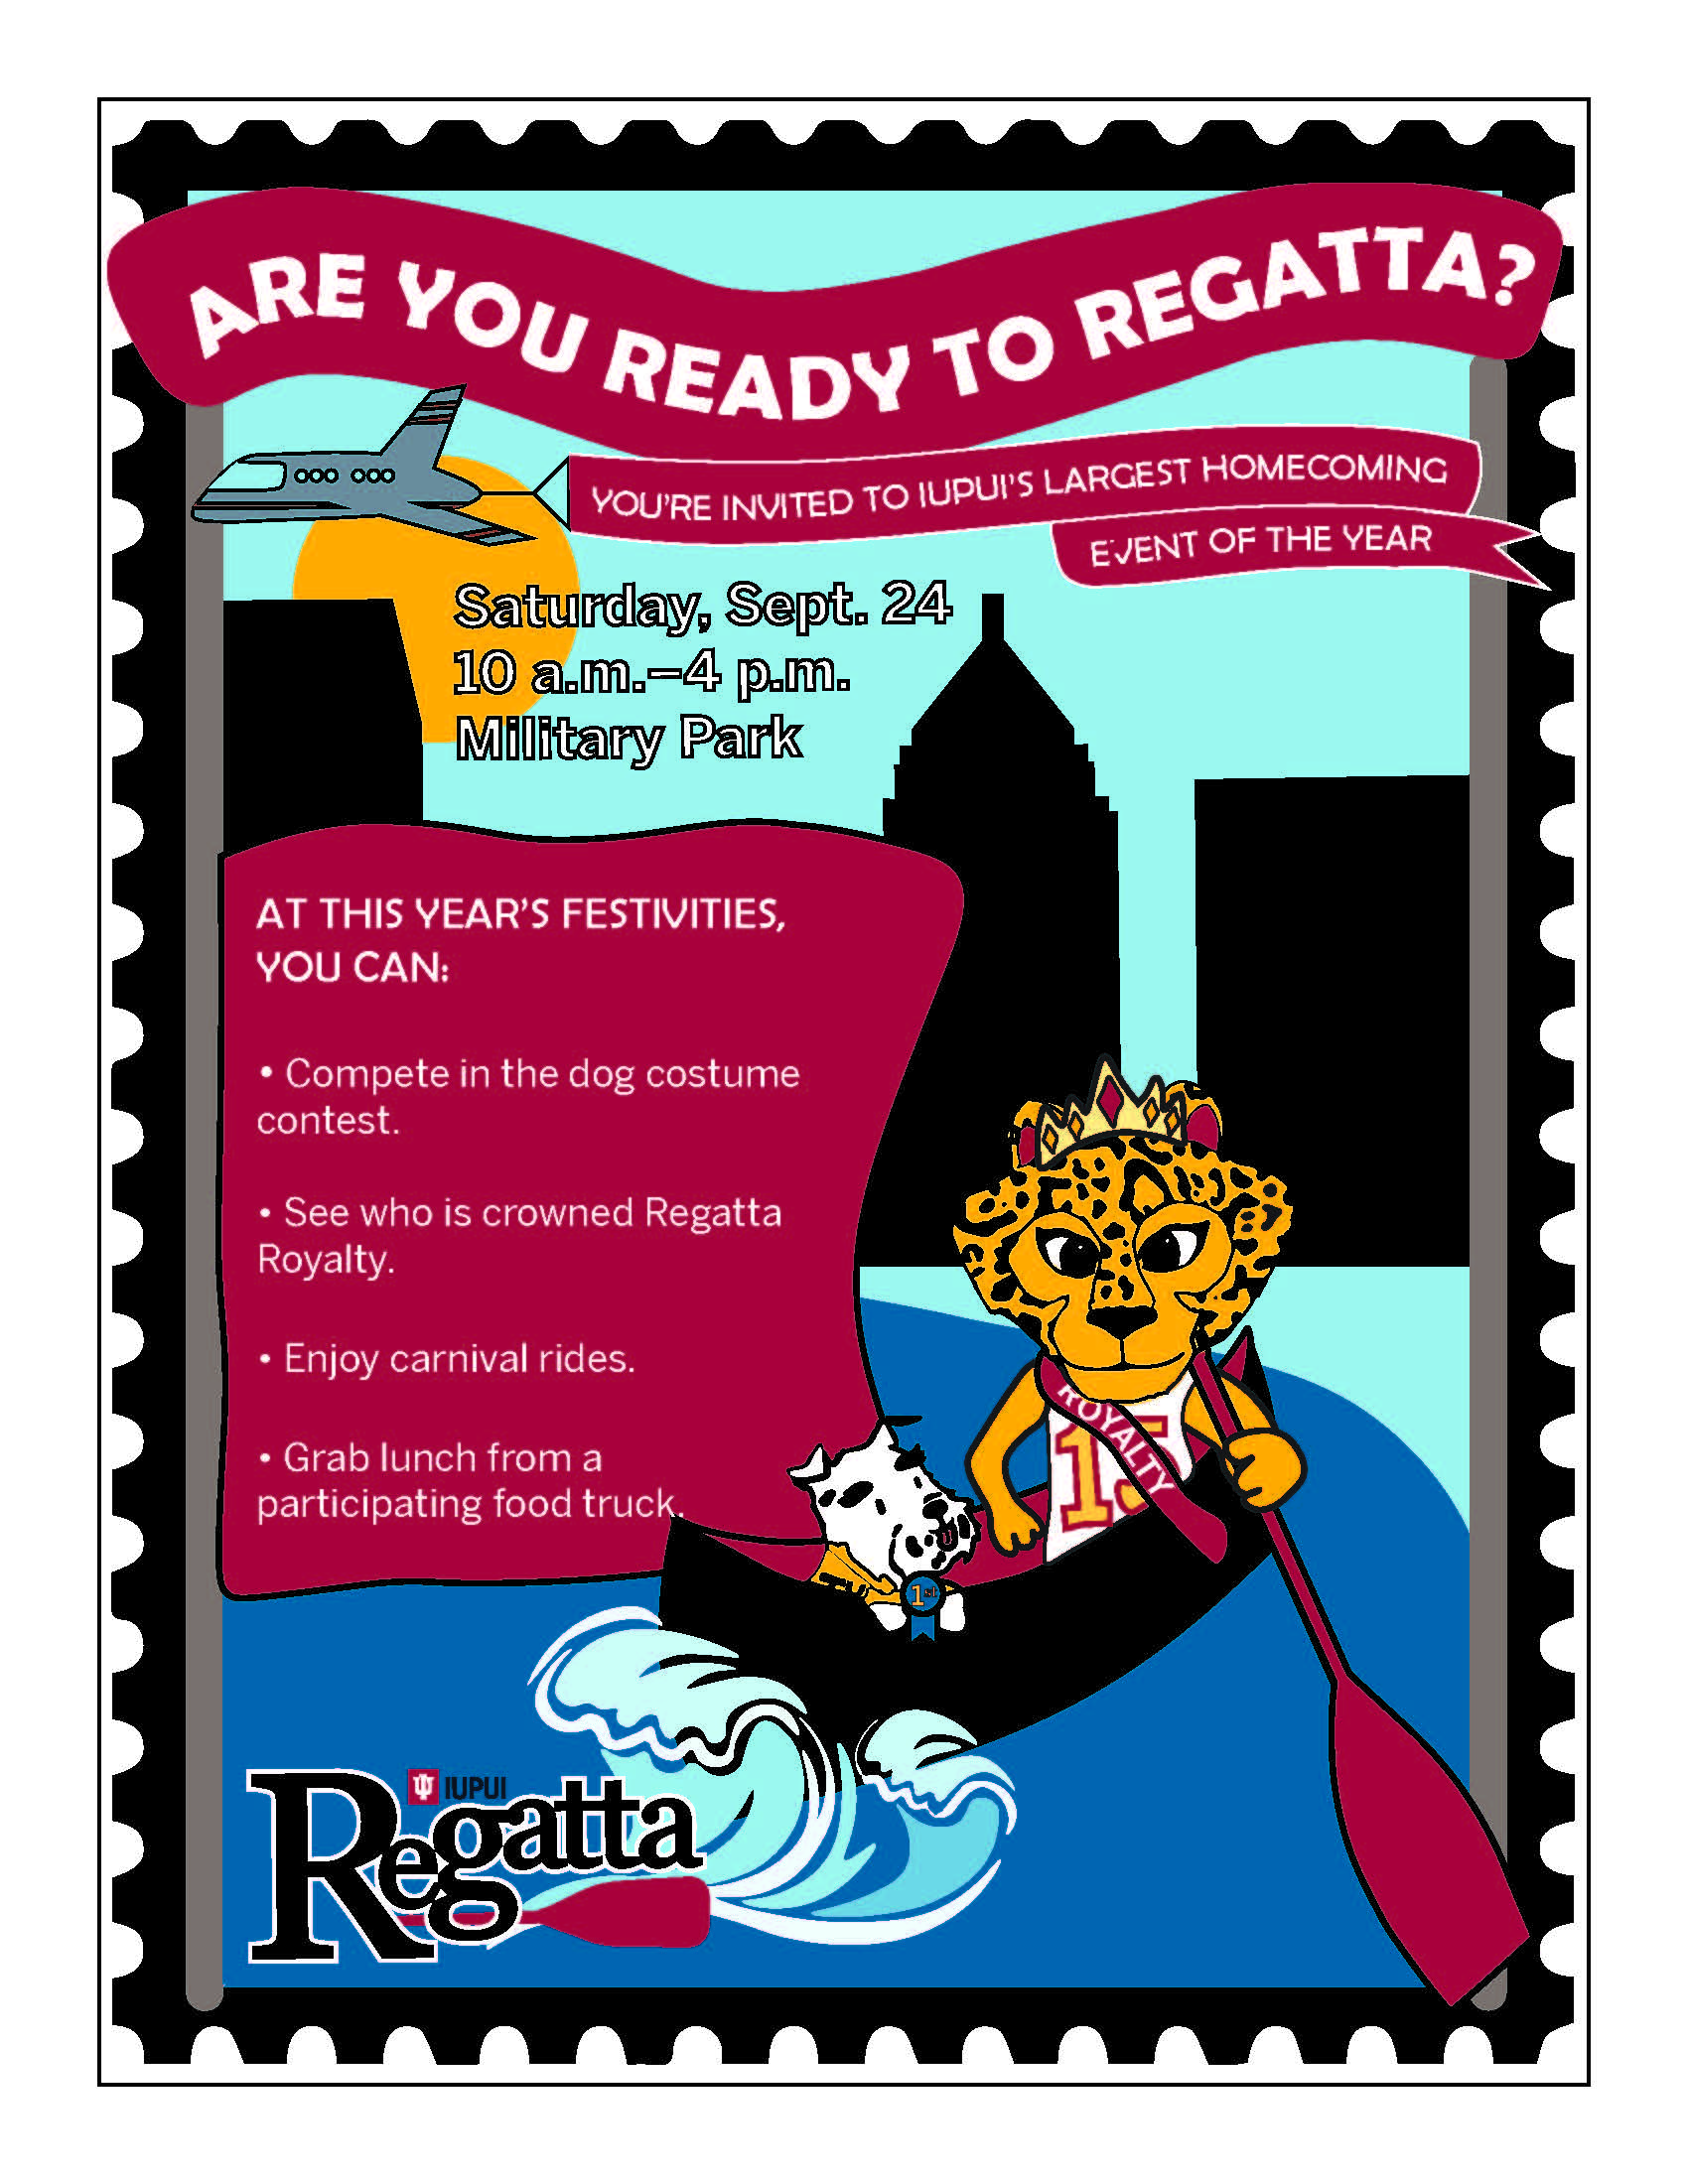 The regatta 2022 poster.